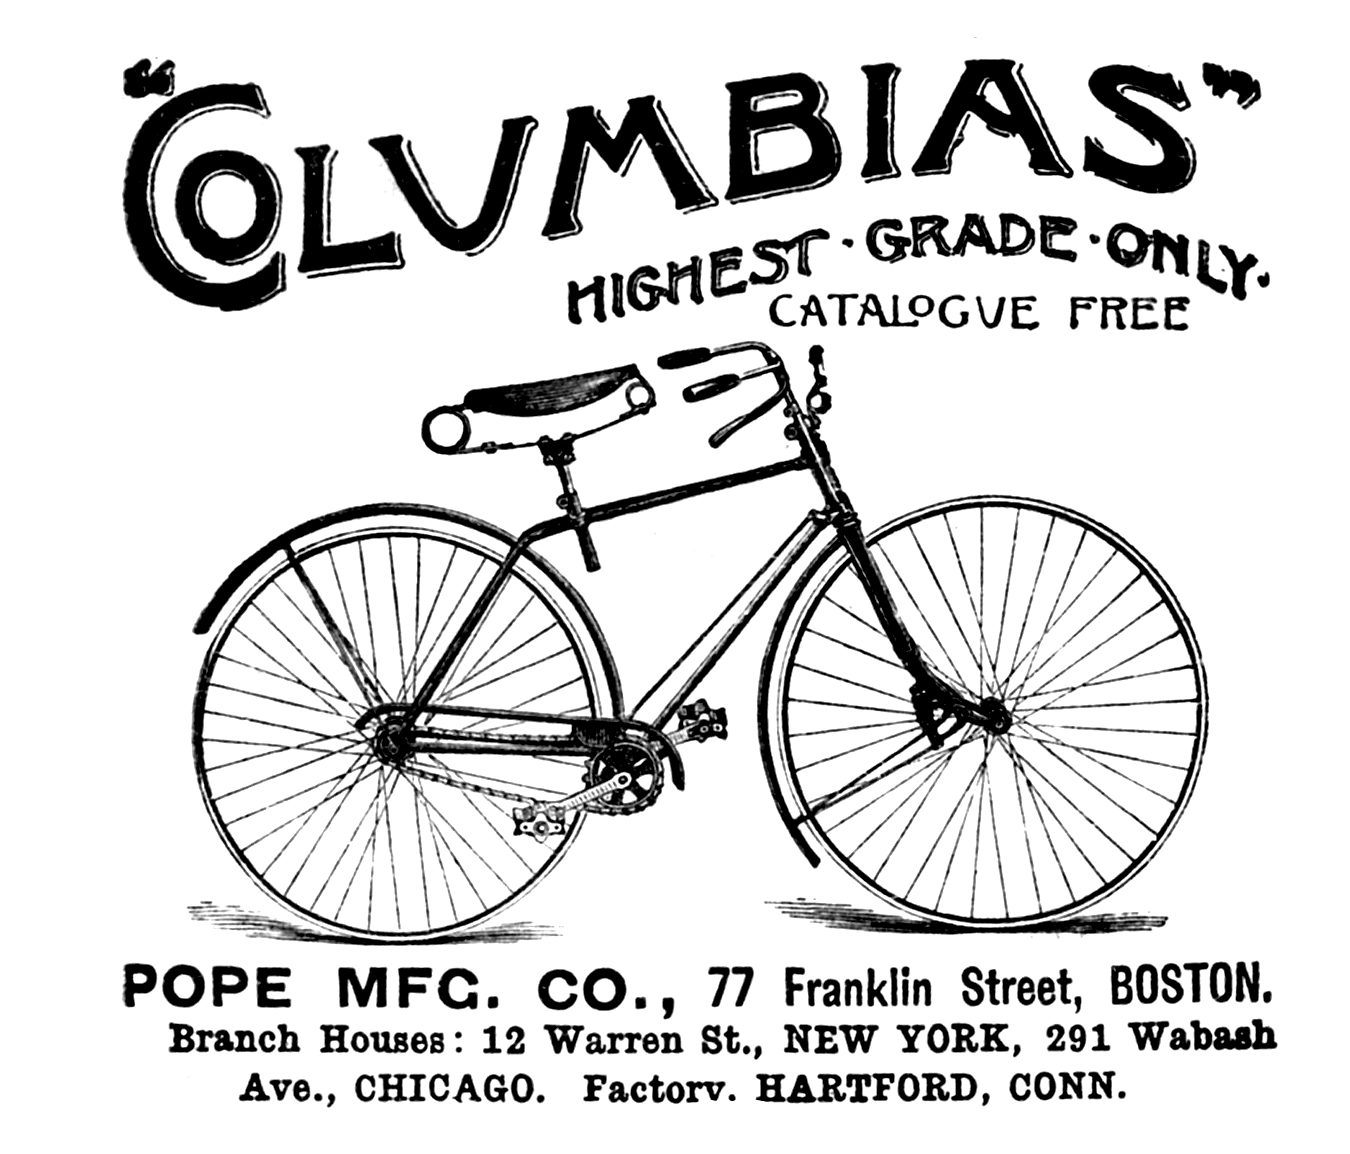 Bicycle Columbias Advertising